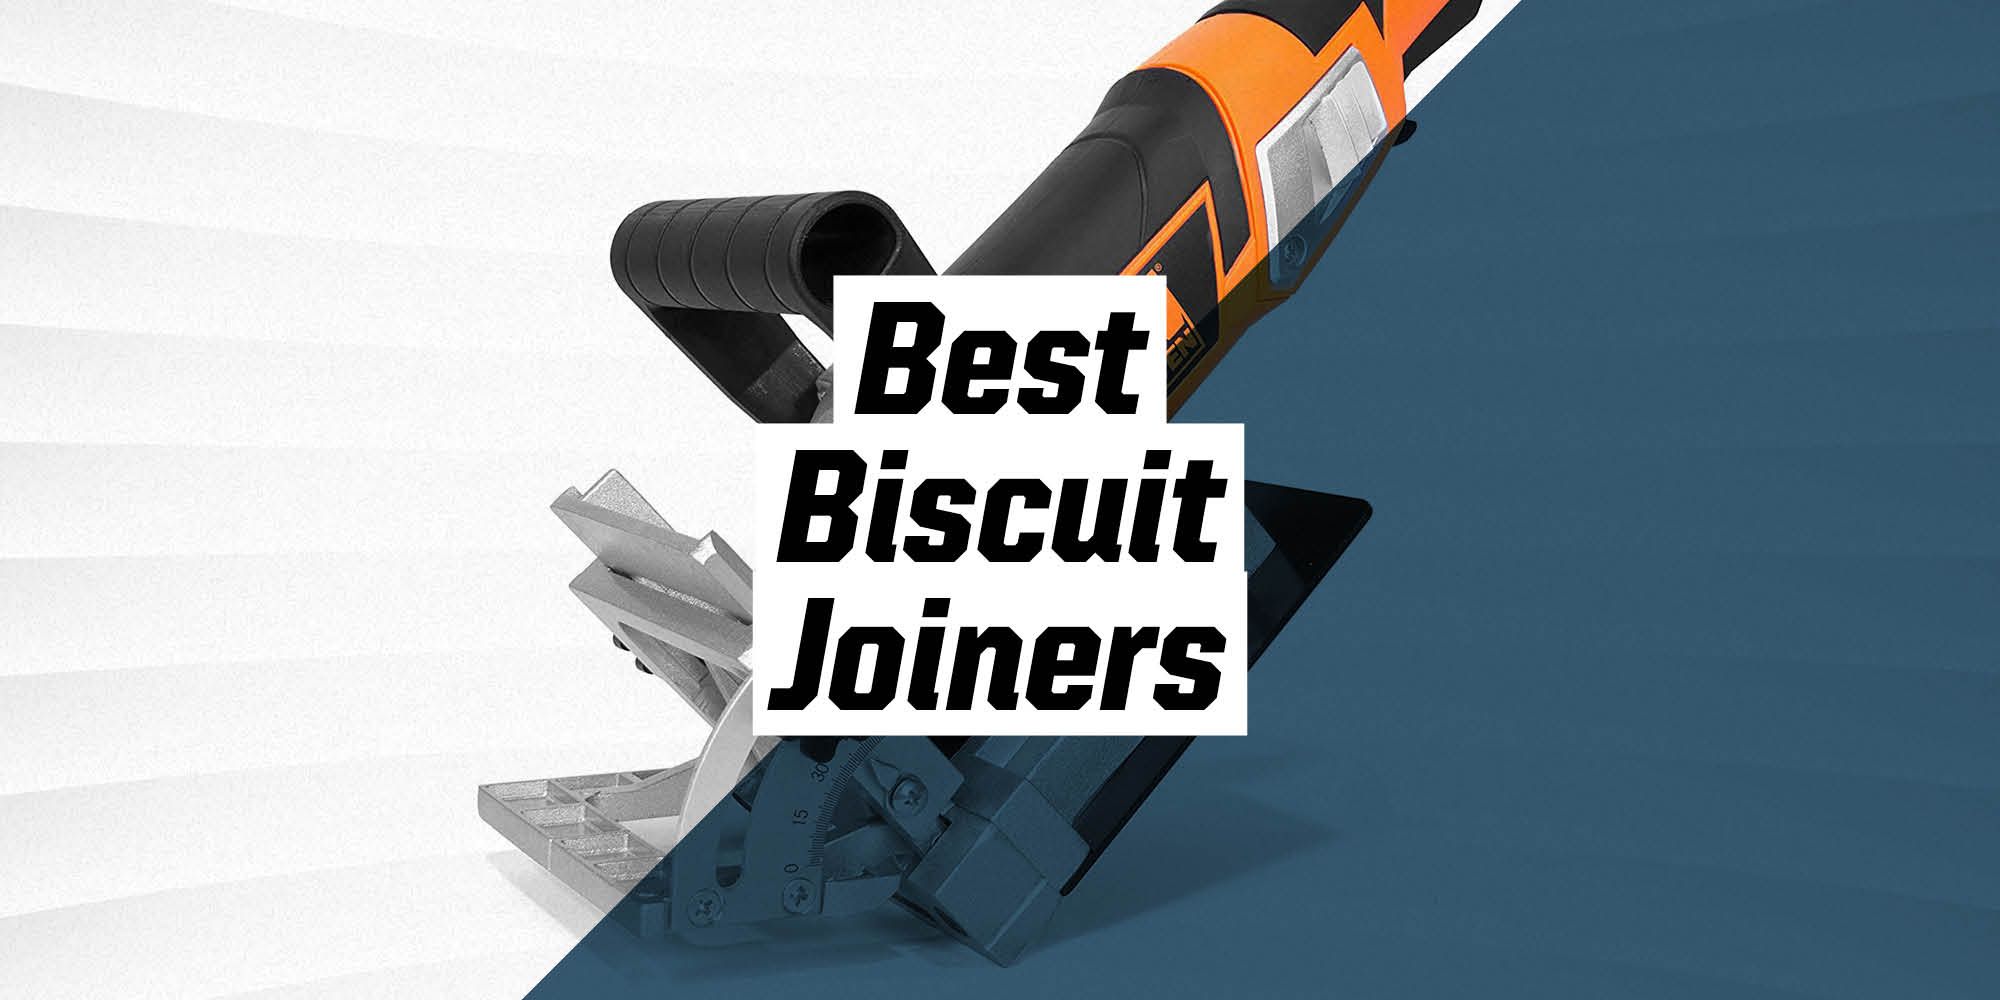 Best Biscuit Joiner • Insteading